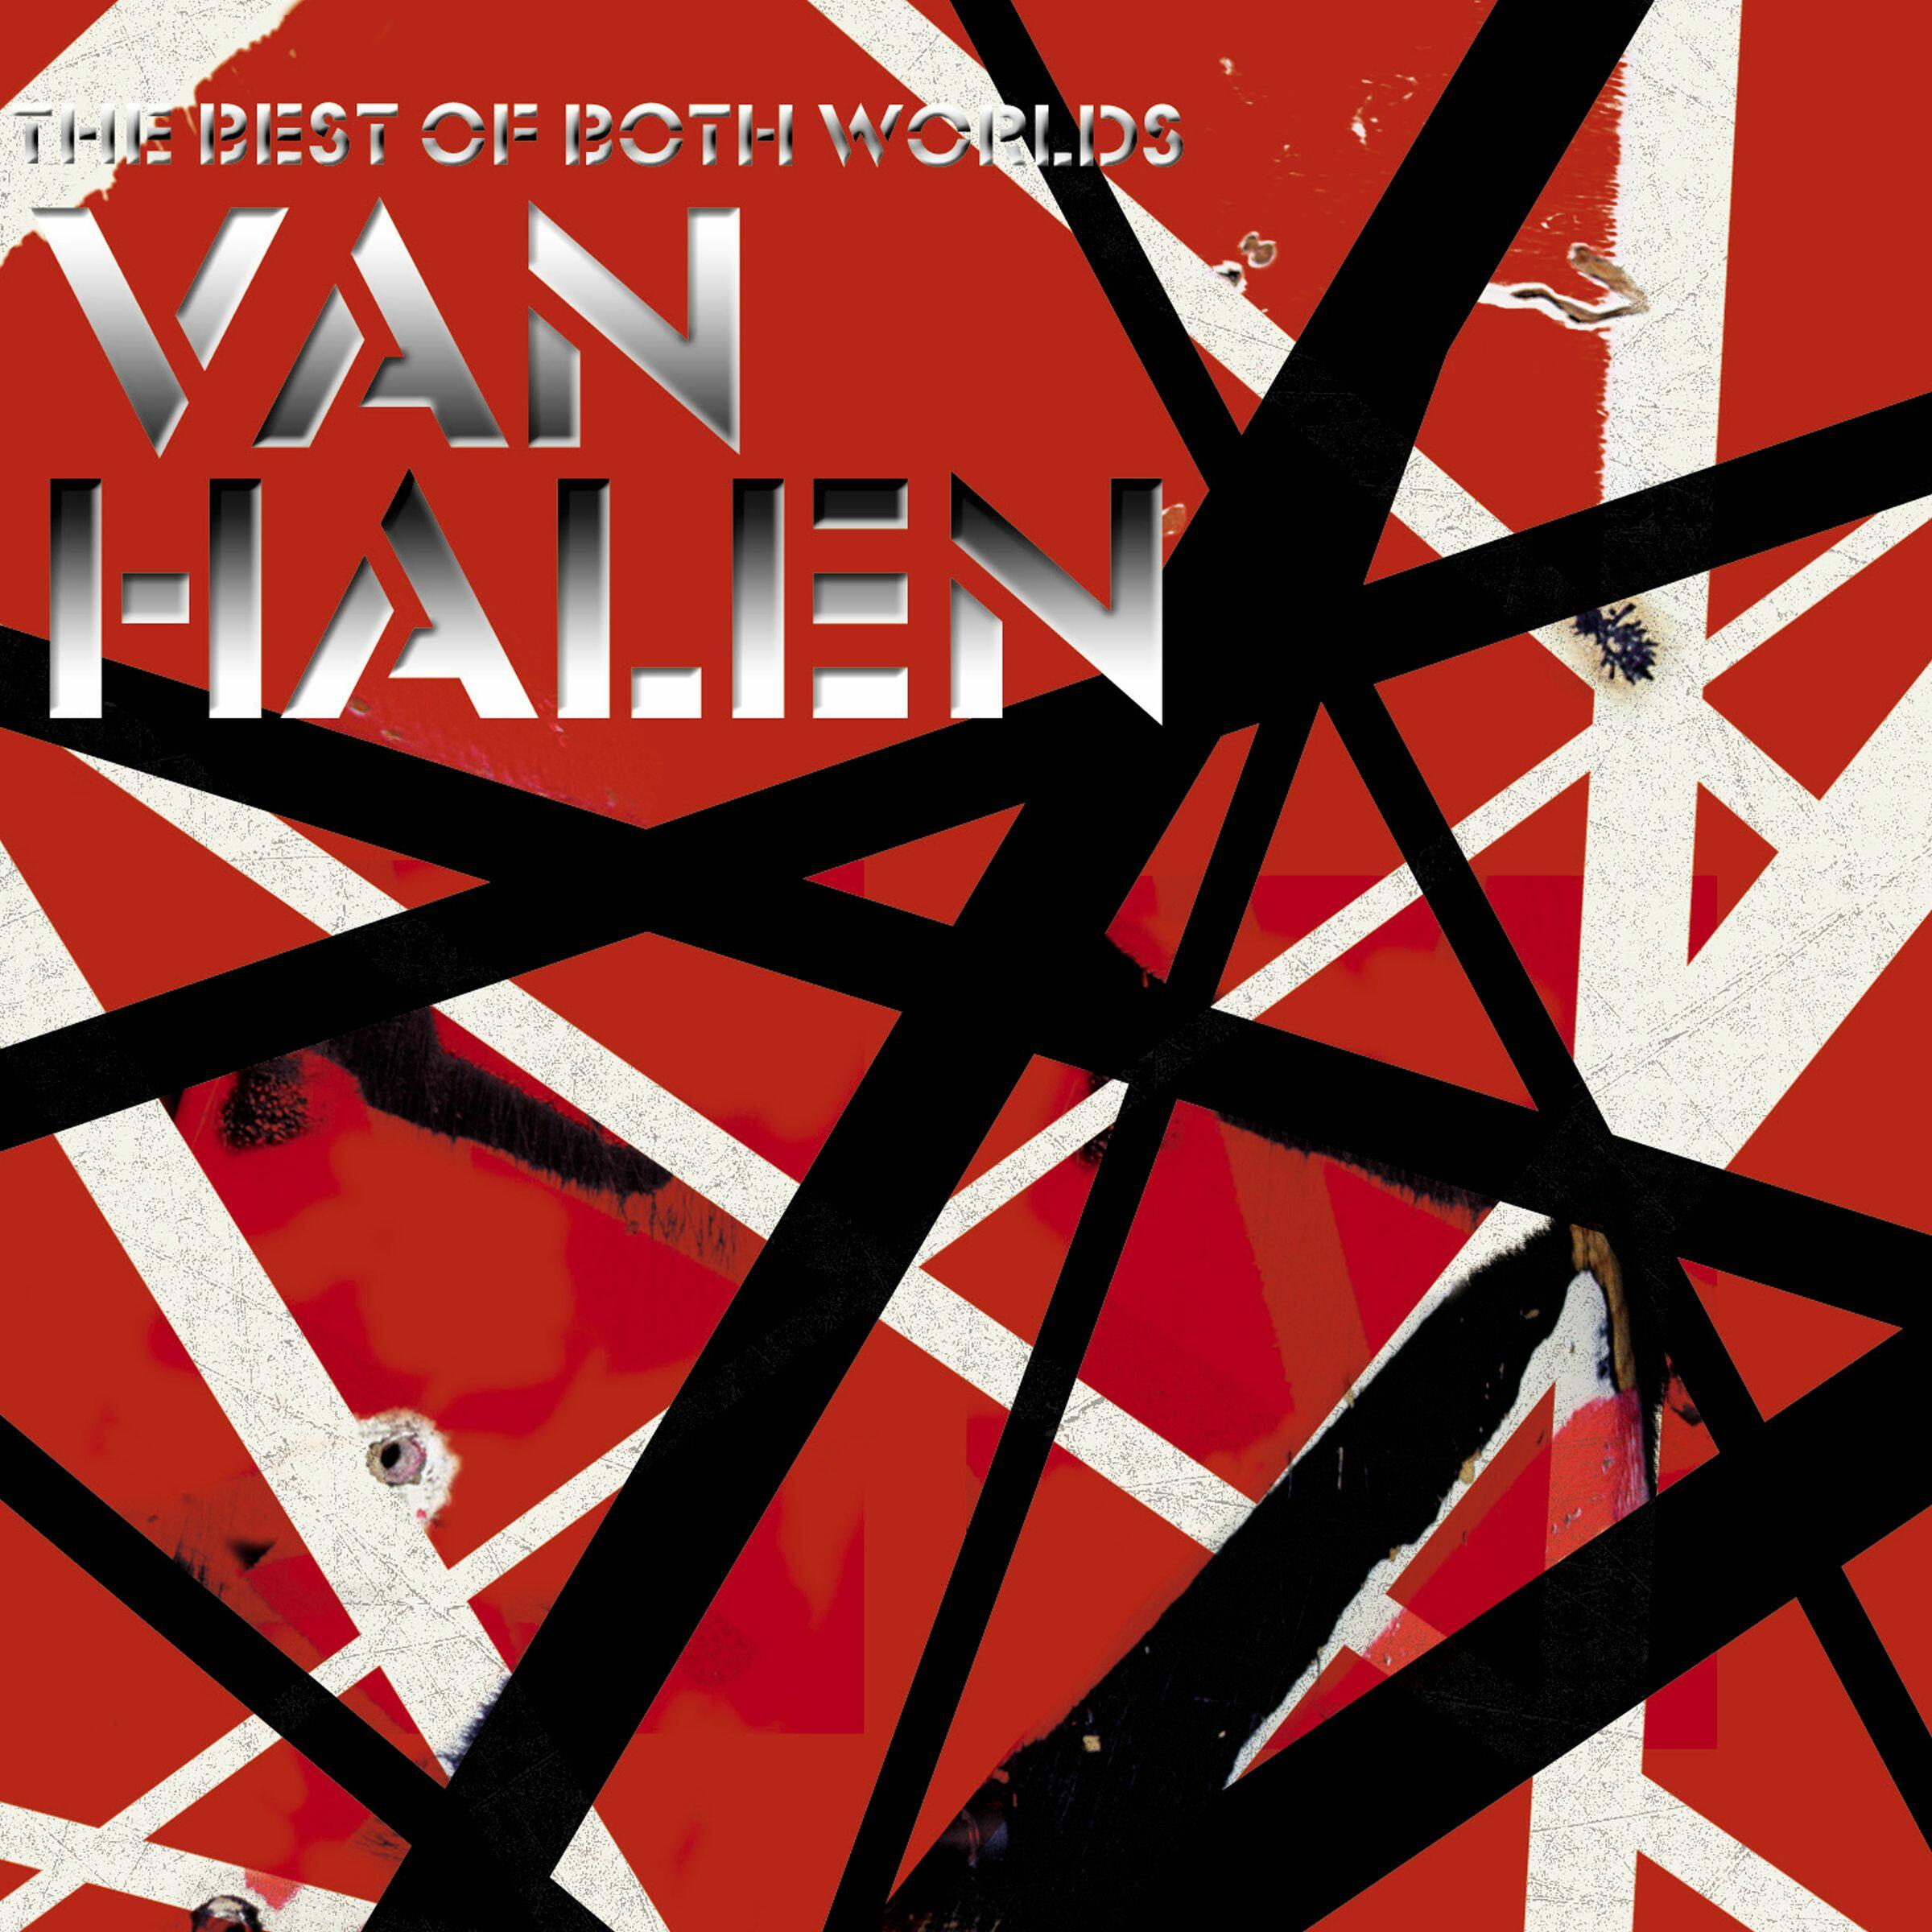 Listen Free to Van Halen - The Best of Both Worlds Radio on iHeartRadio | iHeartRadio2400 x 2400